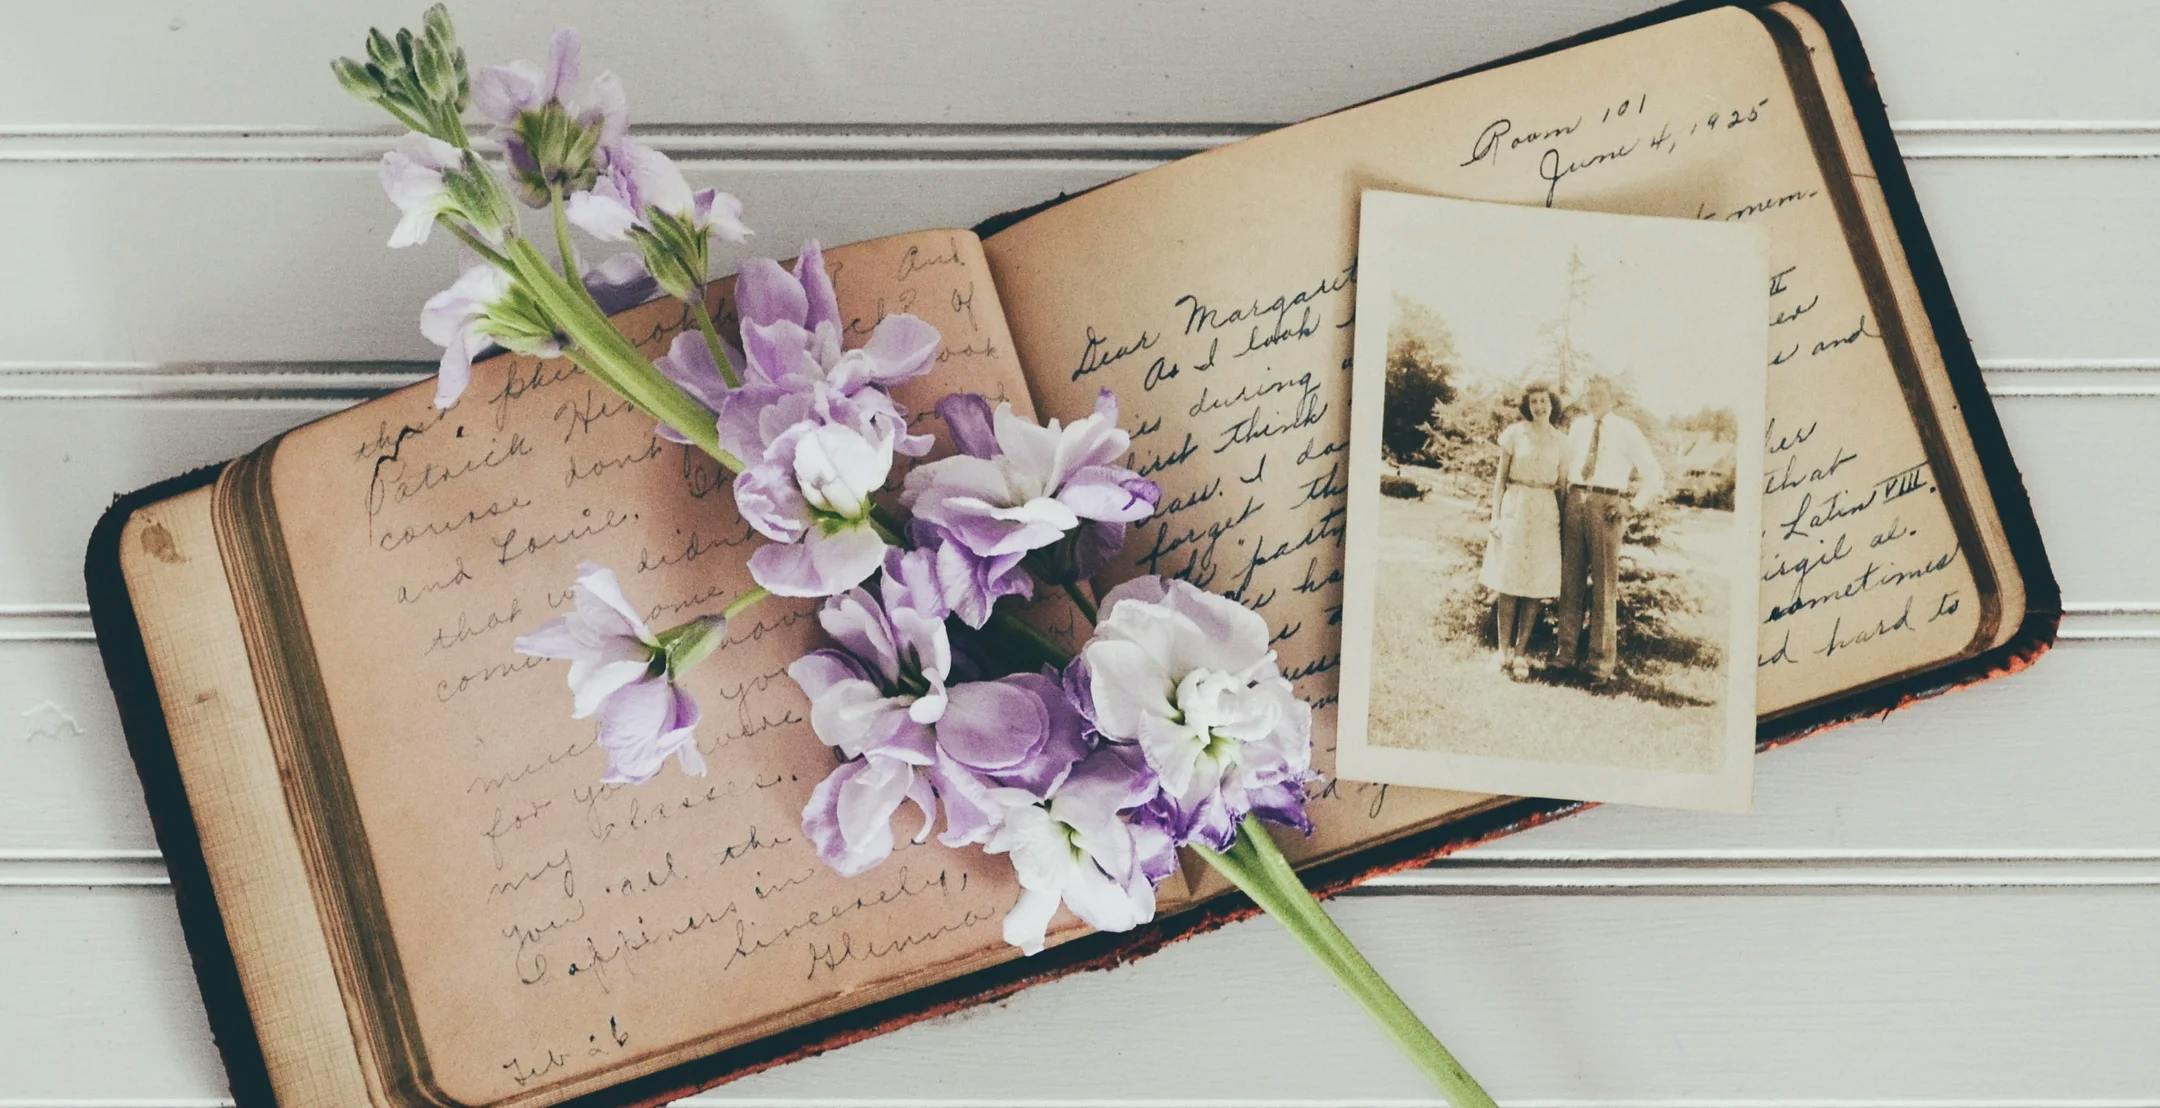 Gammel dagbok, gammelt bilde og en blomsterstilk